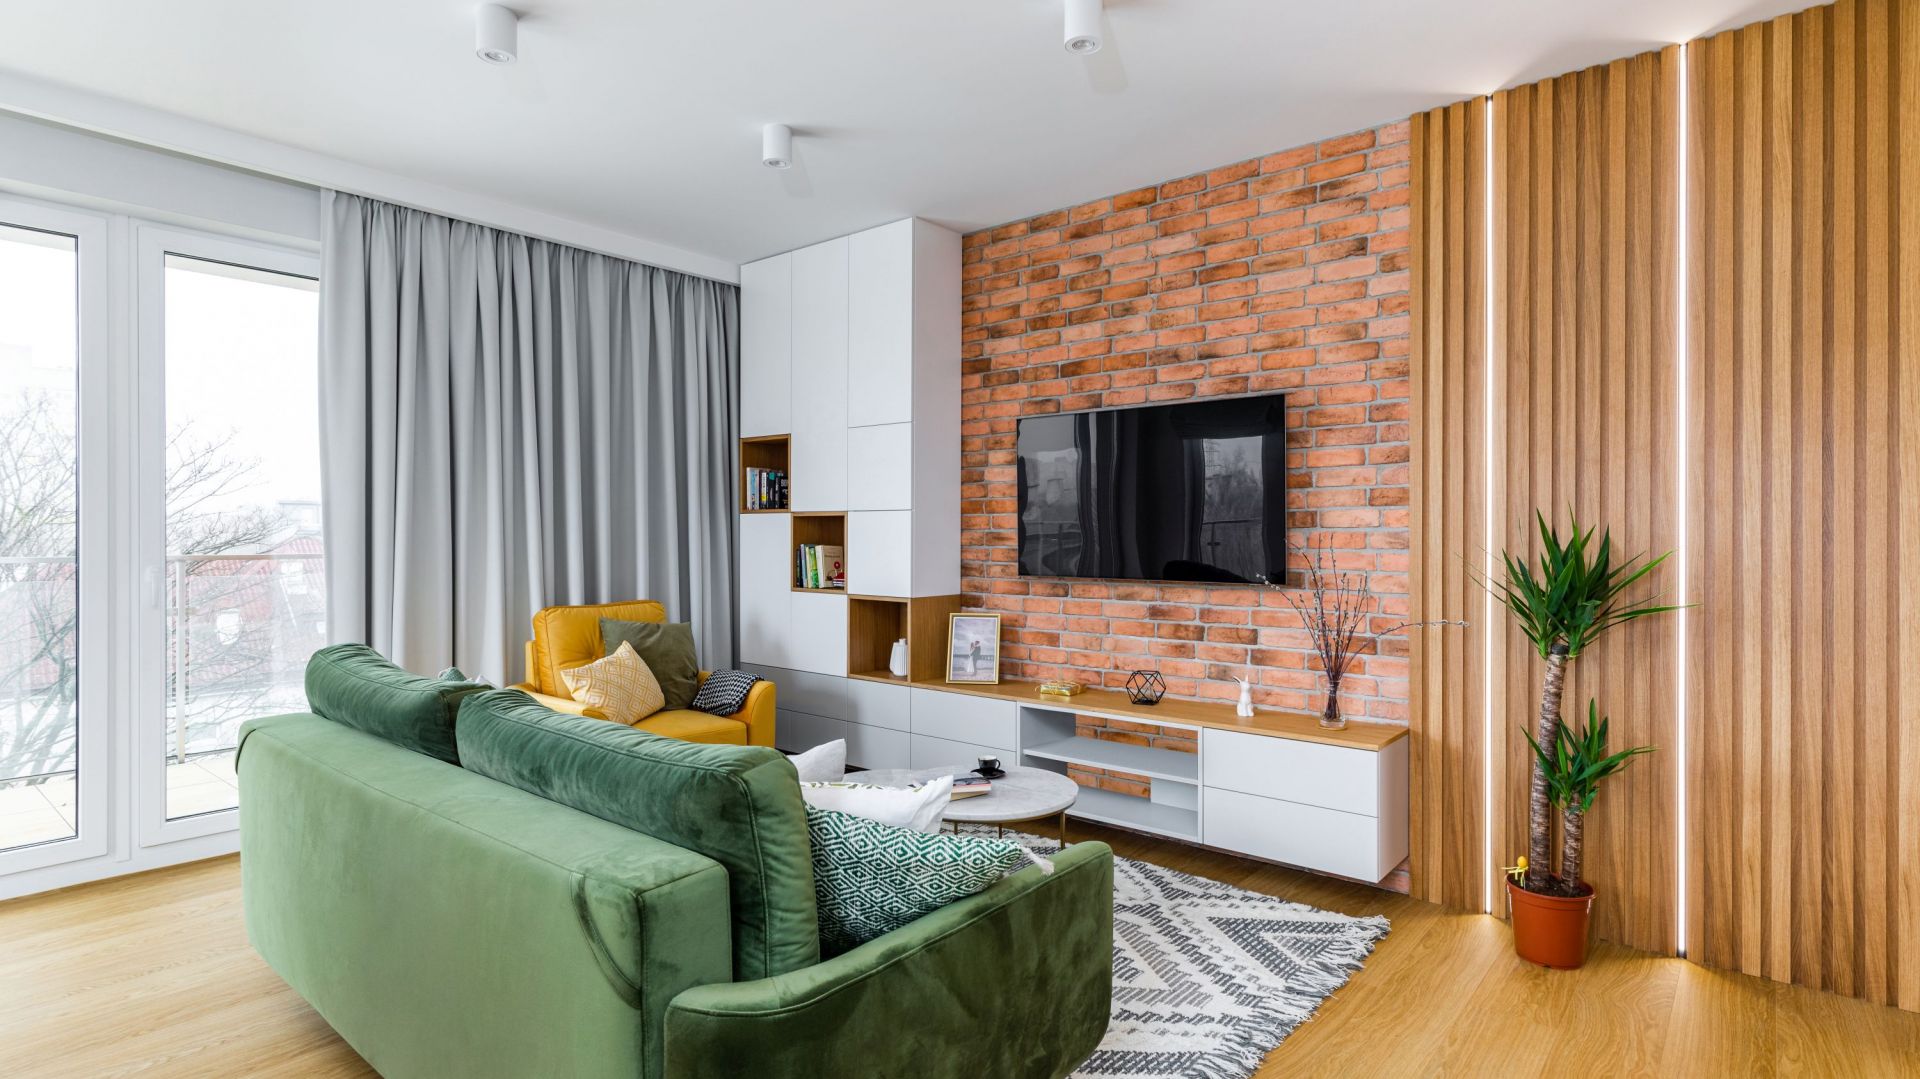 65-metrowe mieszkanie w Warszawie. Zielona kanapa, białe meble. Świetne!